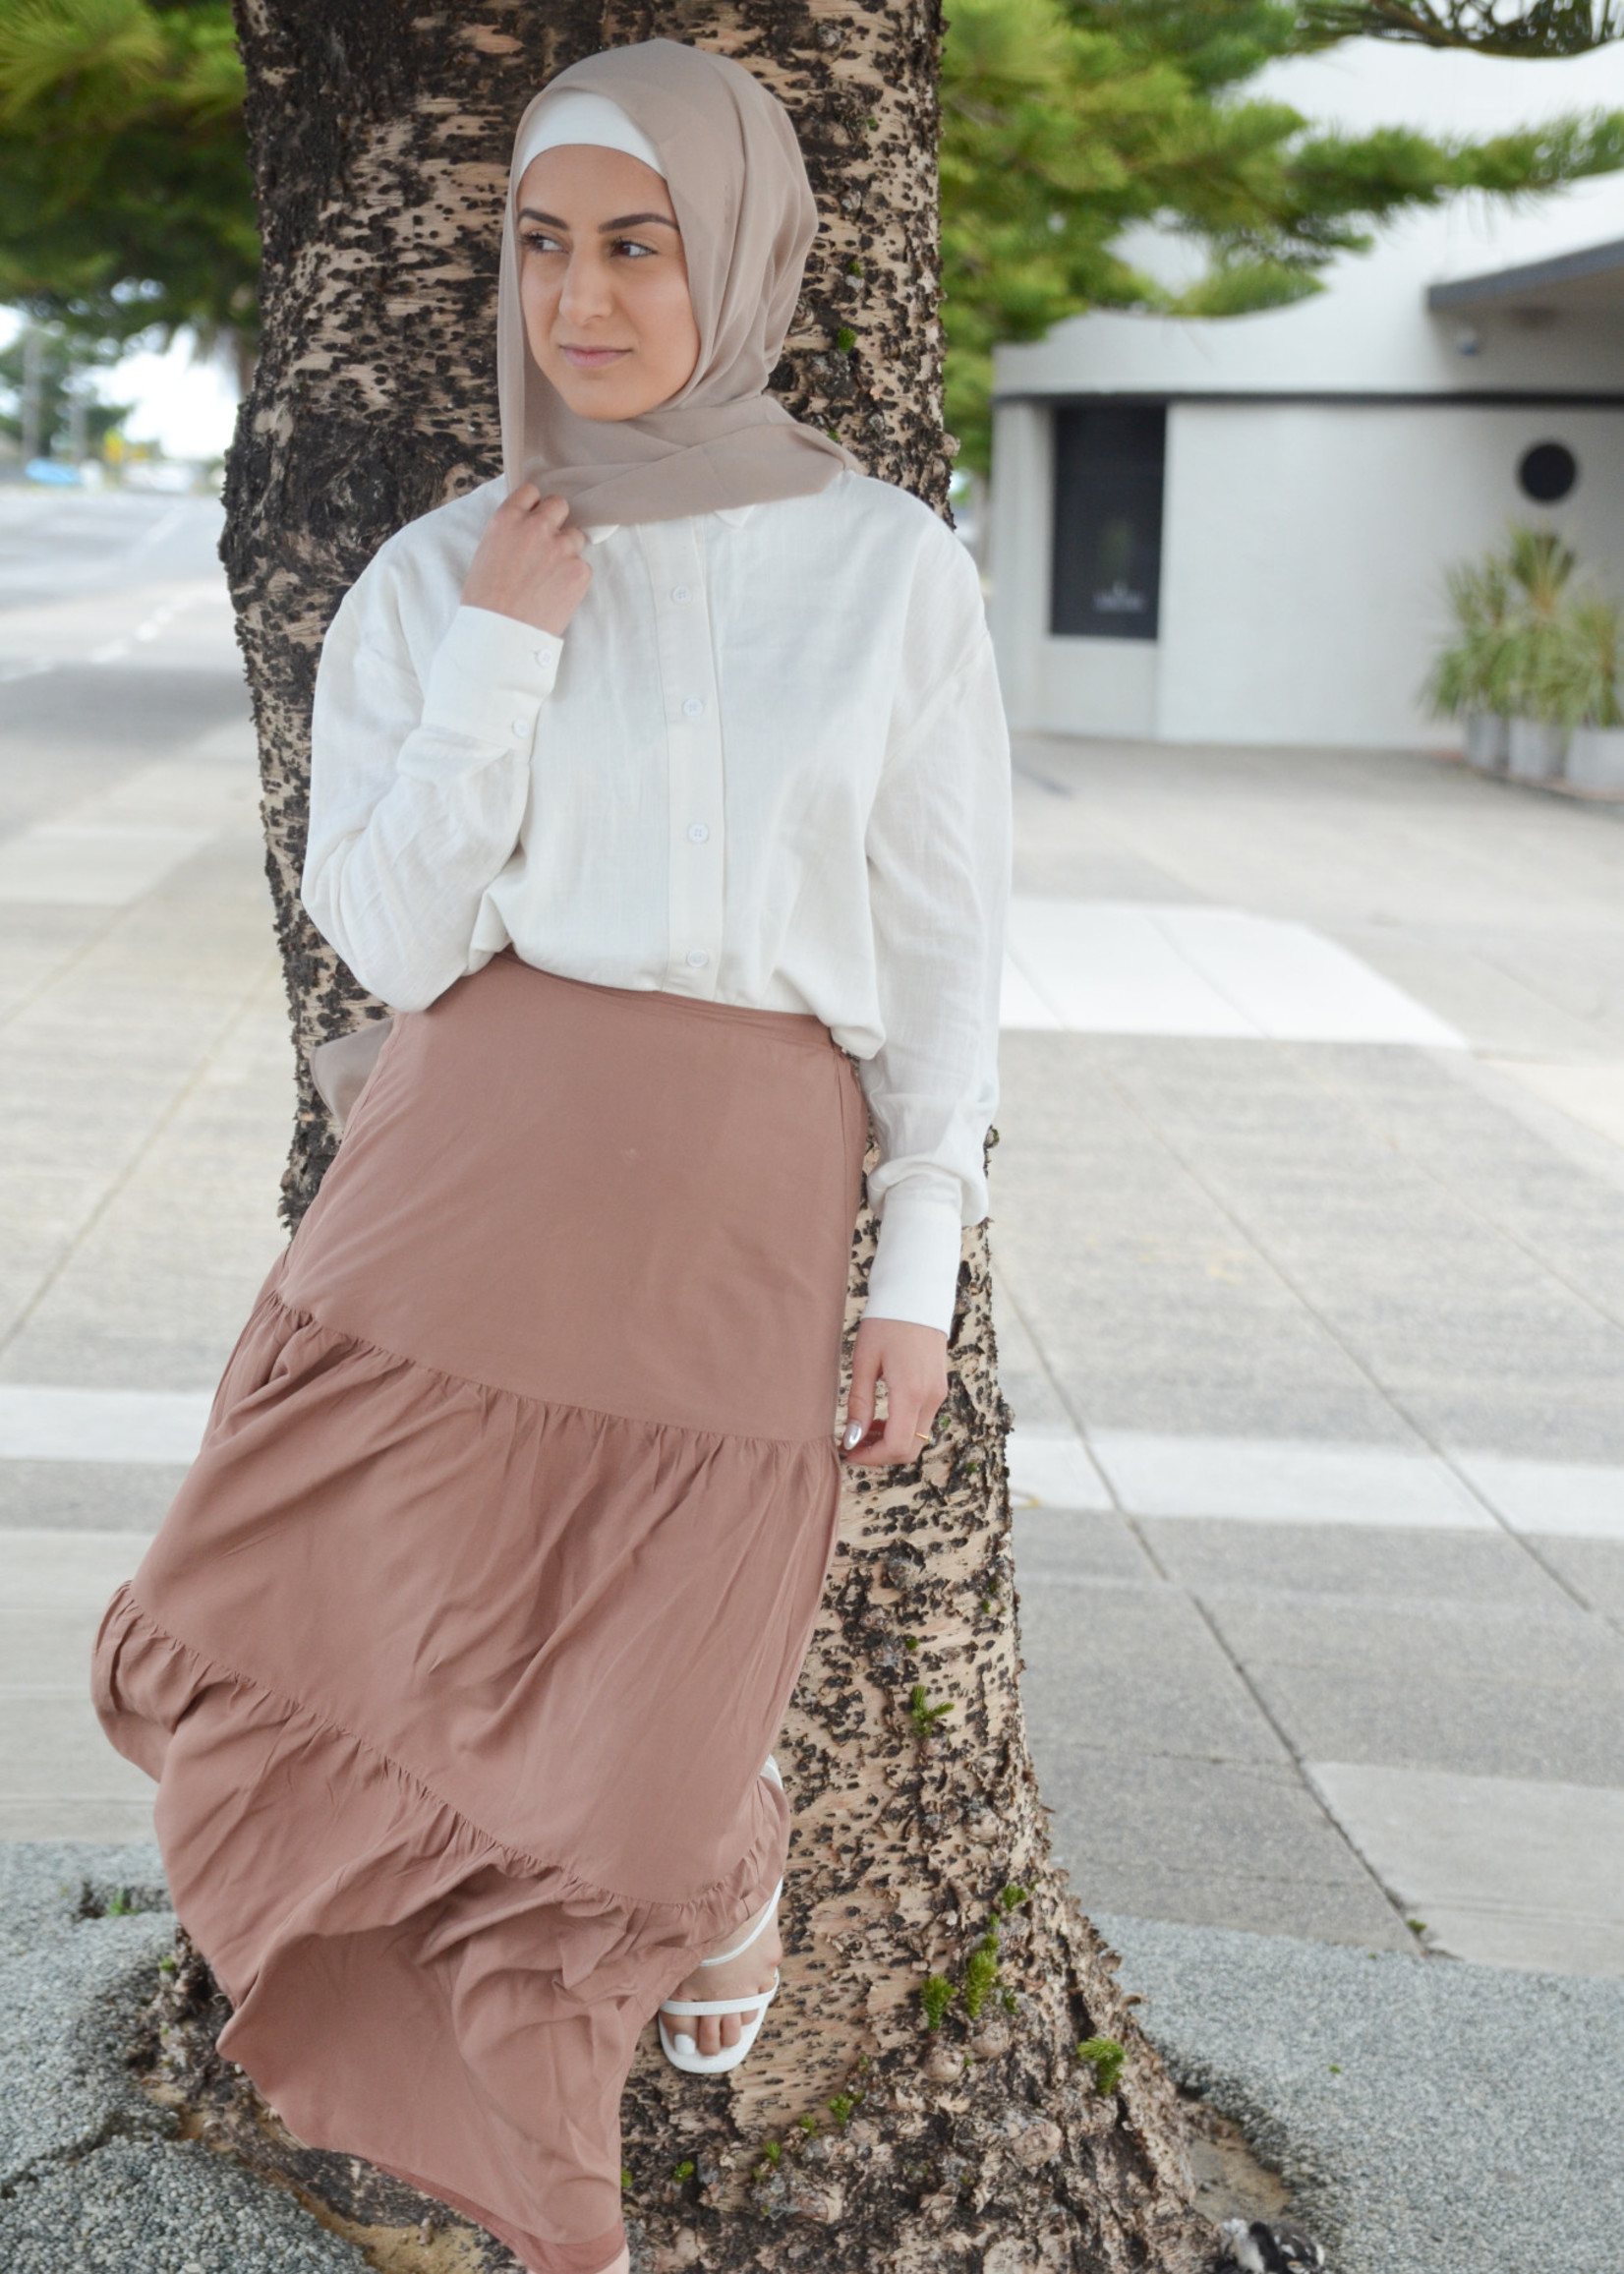 Nasiba Fashion Laila tiered skirt